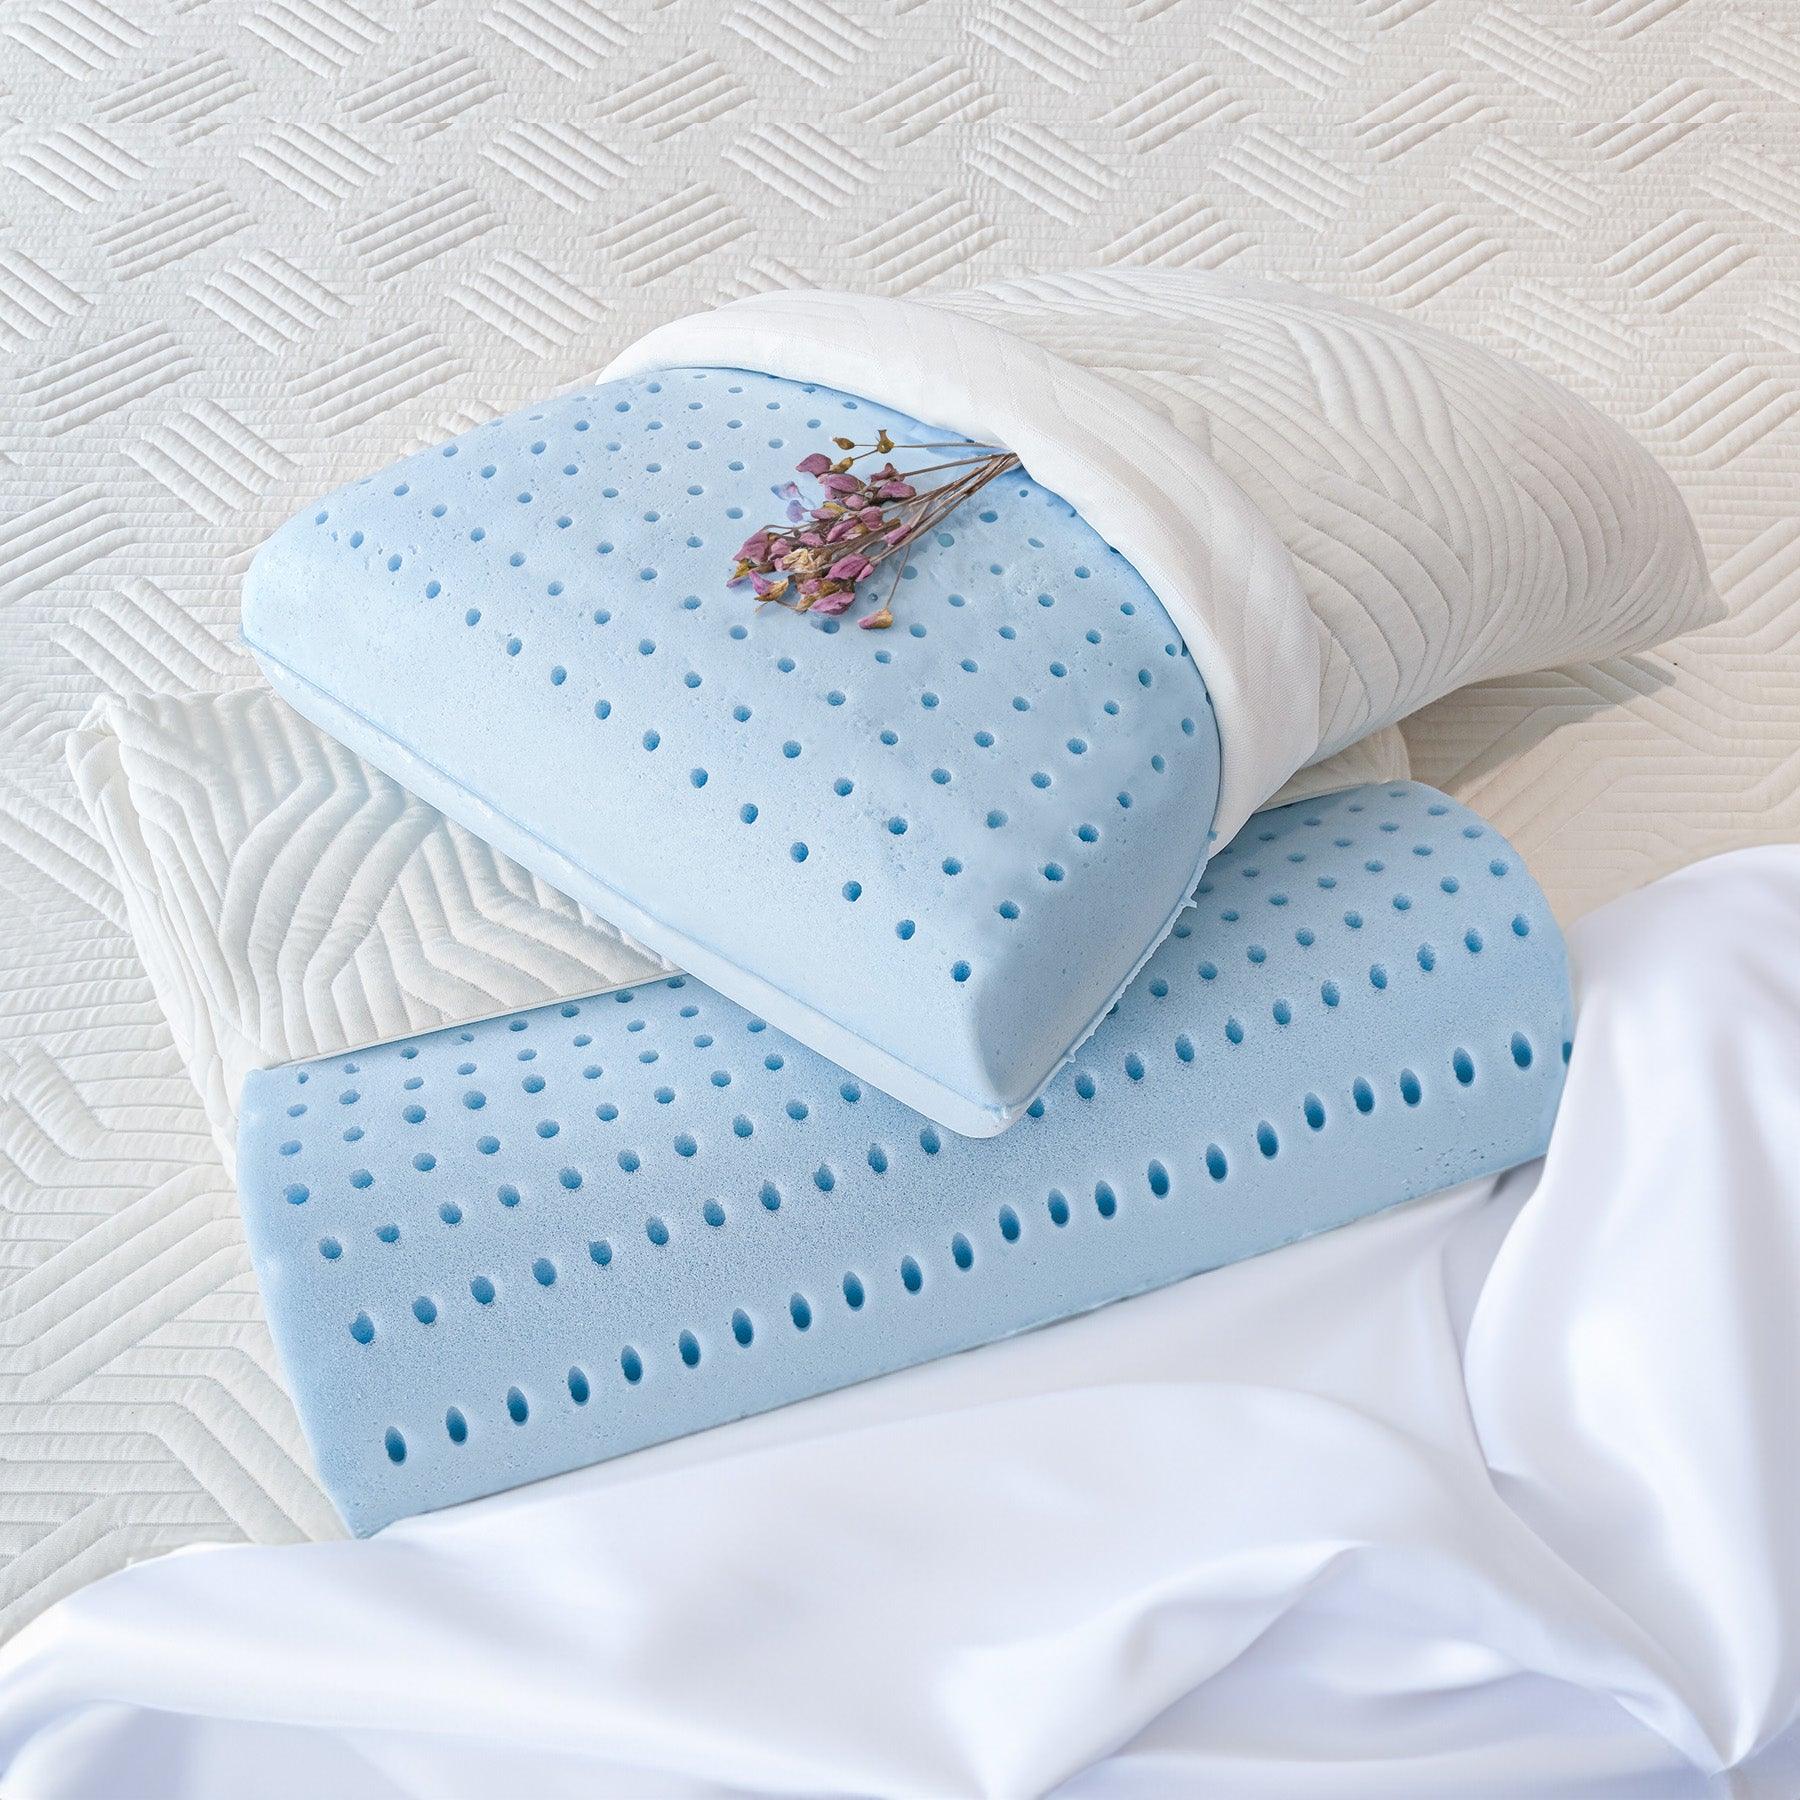 Particolare del cuscino 100% Watergel Donizetti di Beliamo, che mostra la qualità del materiale traspirante e confortevole